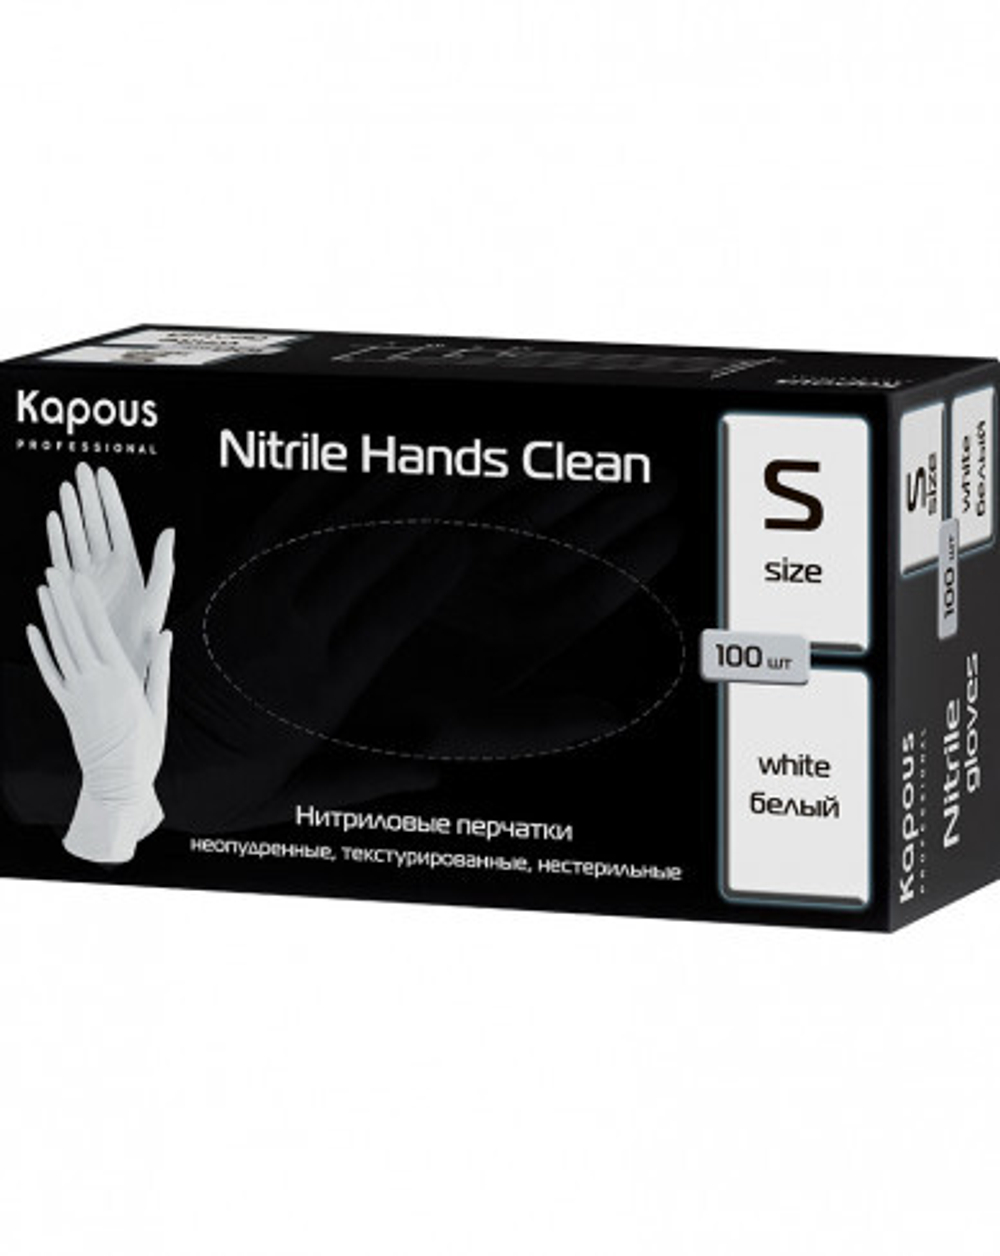 Kapous Professional Перчатки нитриловые Nitrile Hands Clean, неопудренные, текстурированные, нестерильные, Белый, S, 100 шт